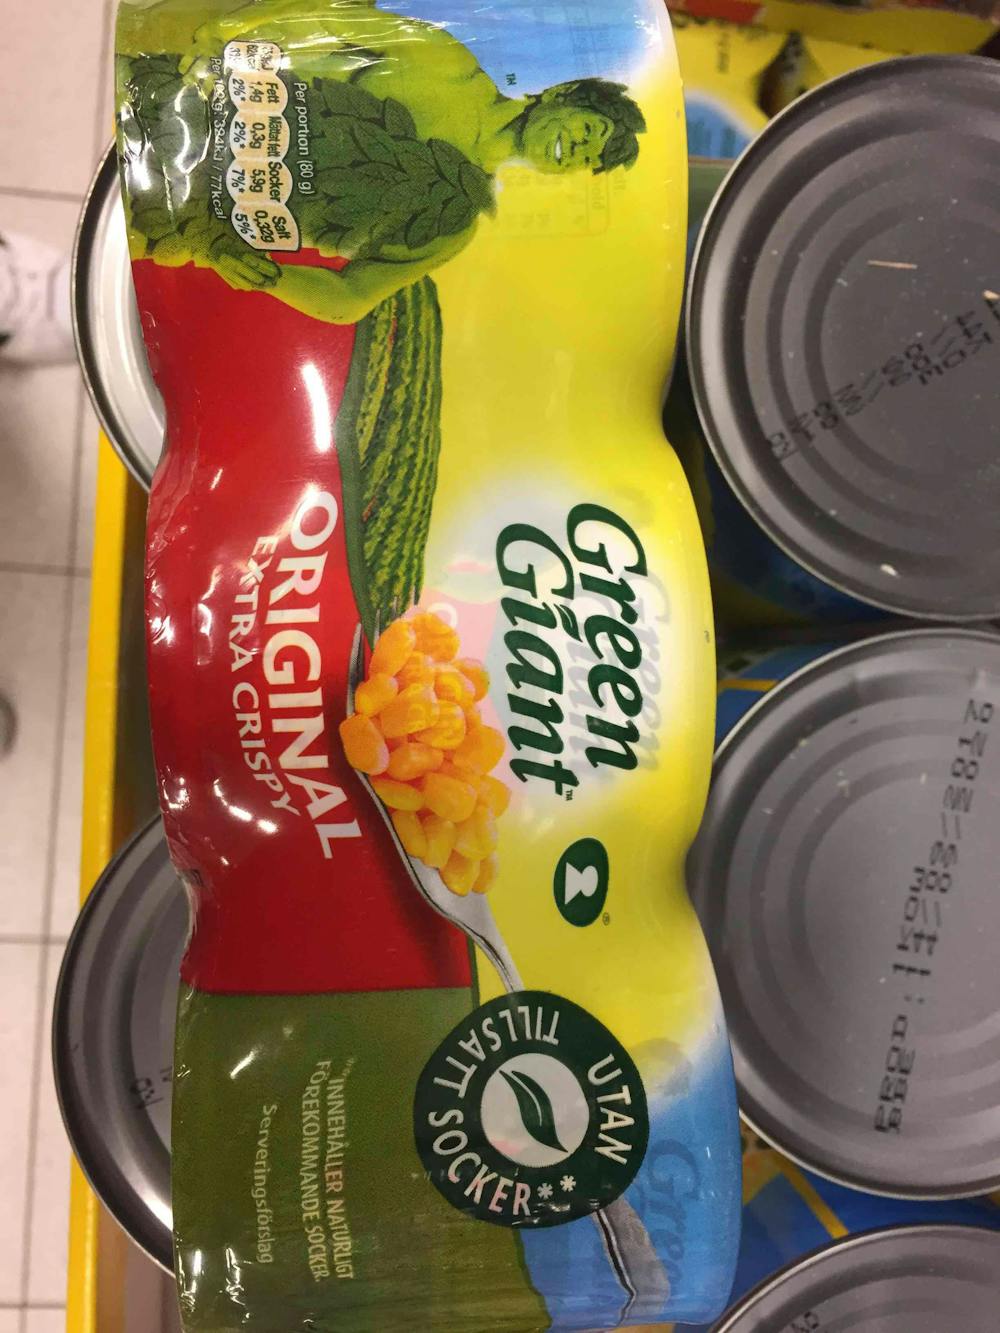 Original extra crispy, Green Giant